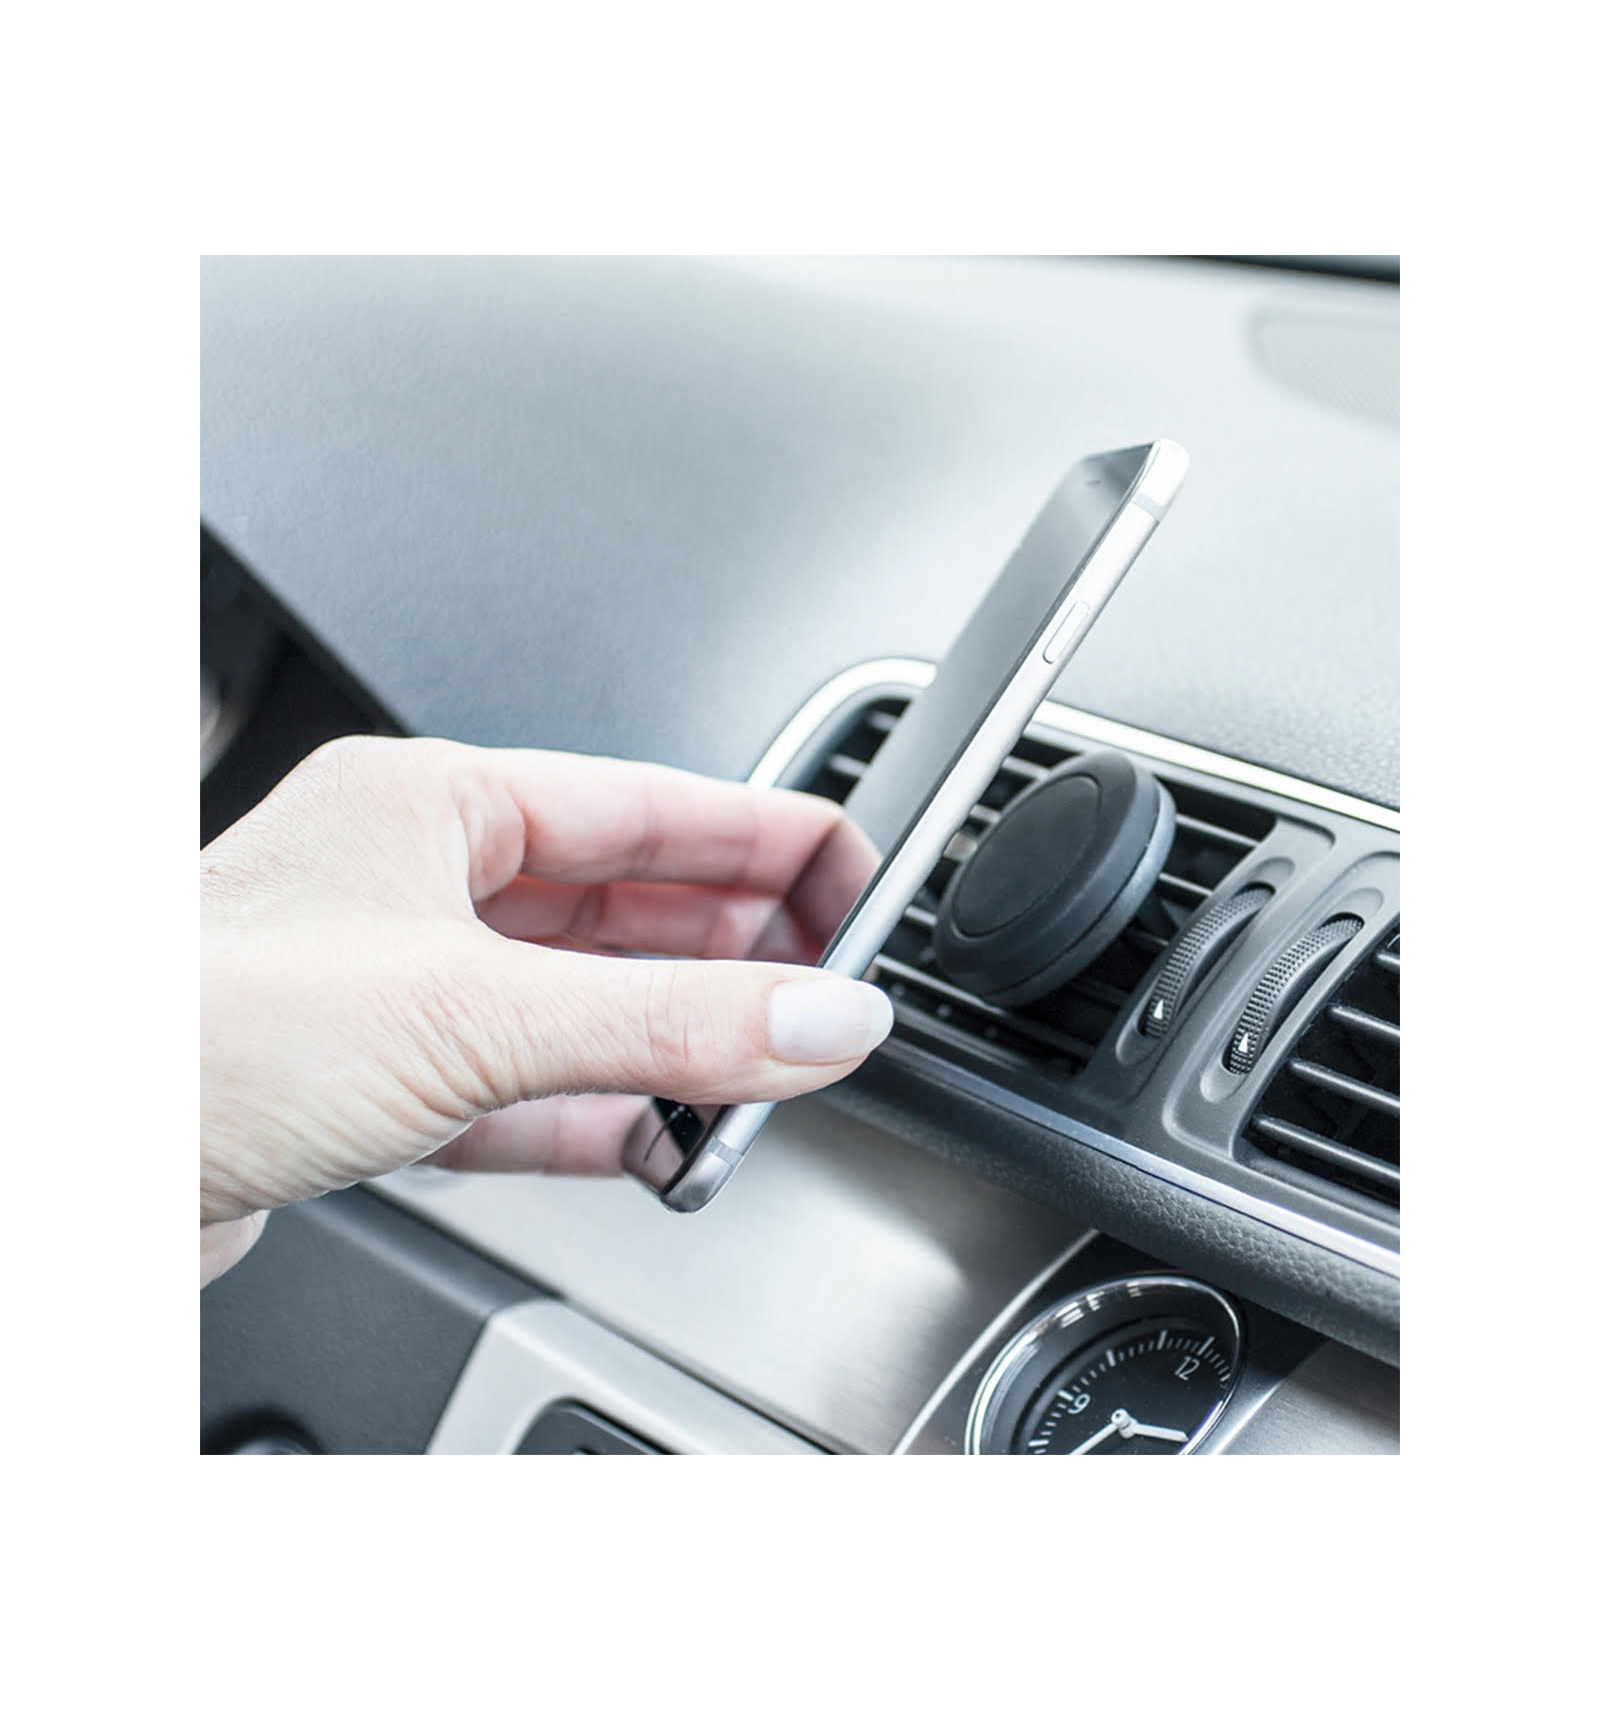 Car Plug Grip für alle Smartphones – Handy Autohalter mit Magnet ▷ hulle24